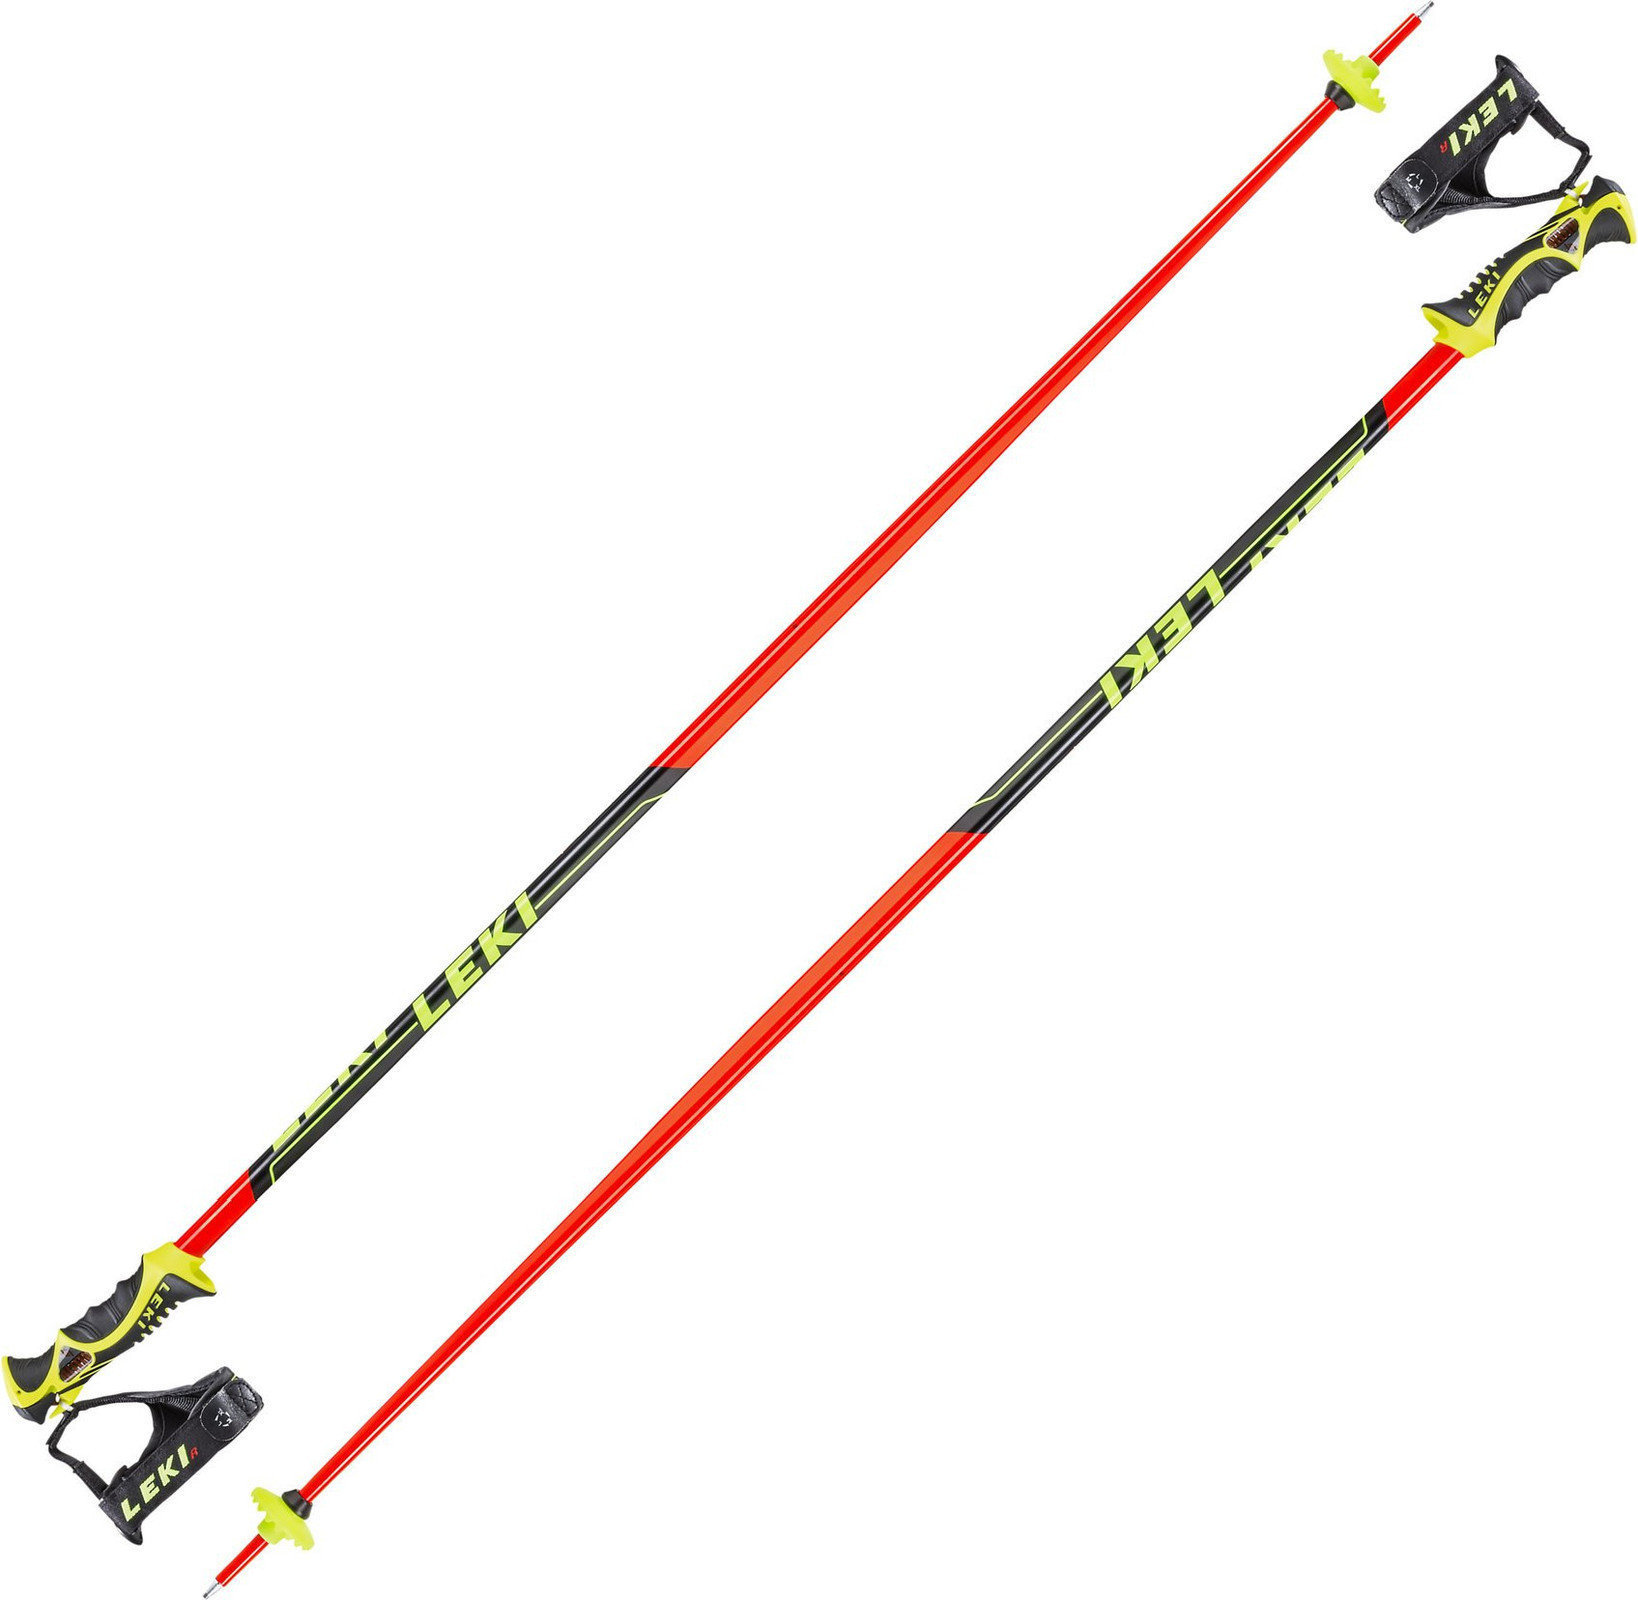 Bastões de esqui Leki Worldcup Racing SL Neonred/Black/White/Yellow 135 cm Bastões de esqui